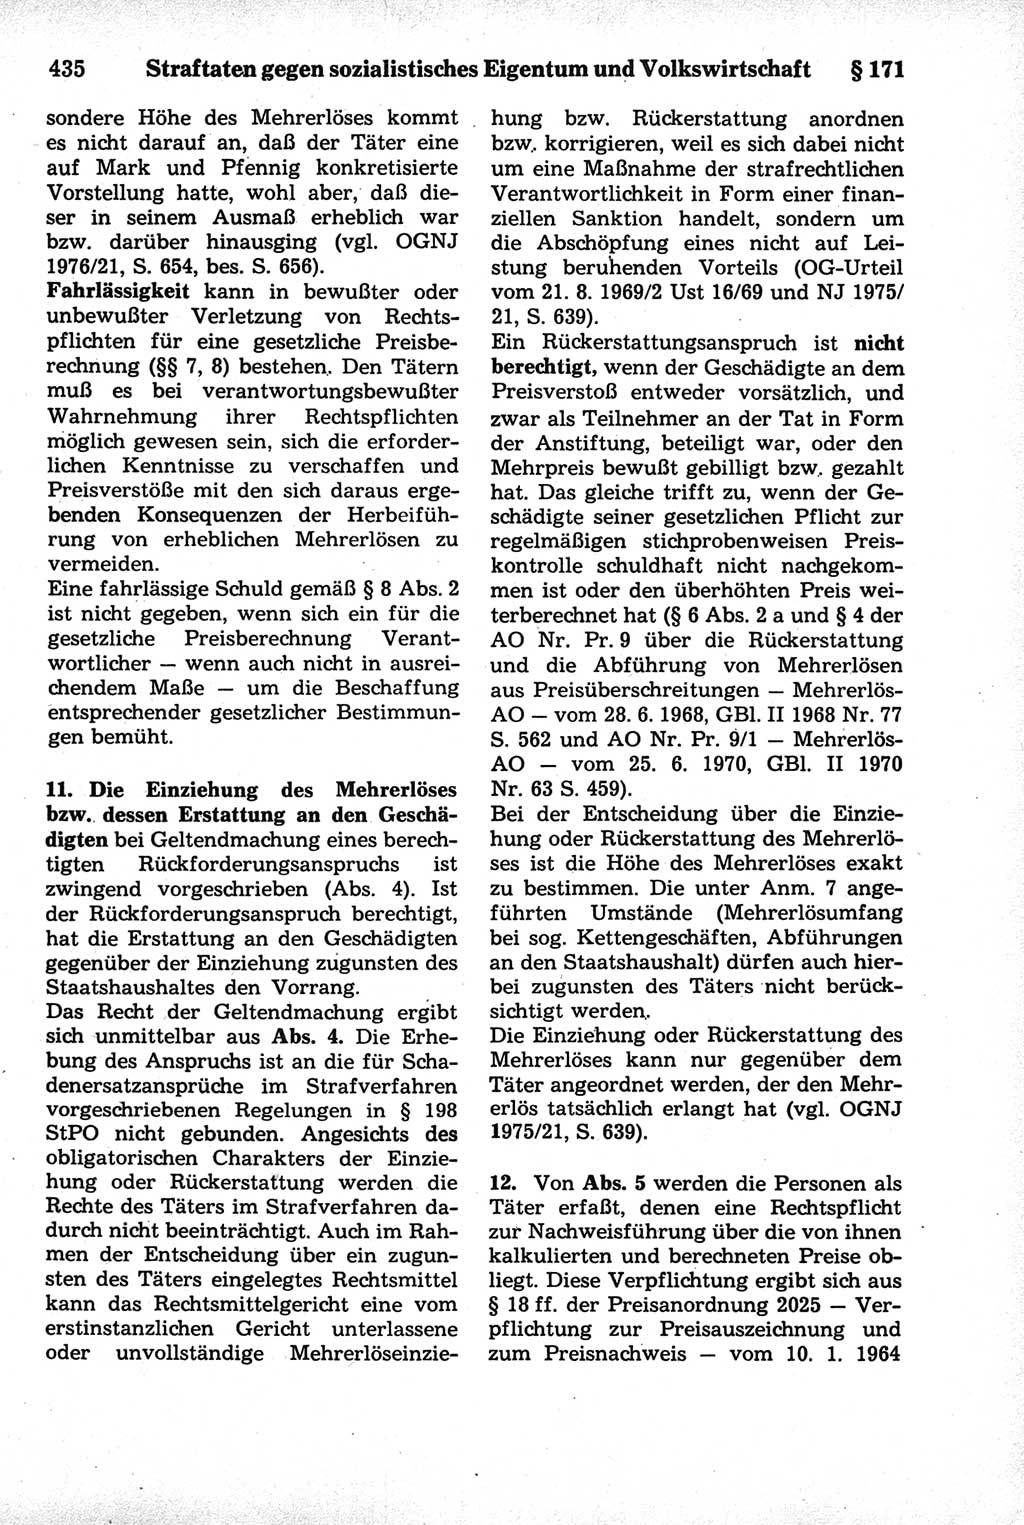 Strafrecht der Deutschen Demokratischen Republik (DDR), Kommentar zum Strafgesetzbuch (StGB) 1981, Seite 435 (Strafr. DDR Komm. StGB 1981, S. 435)